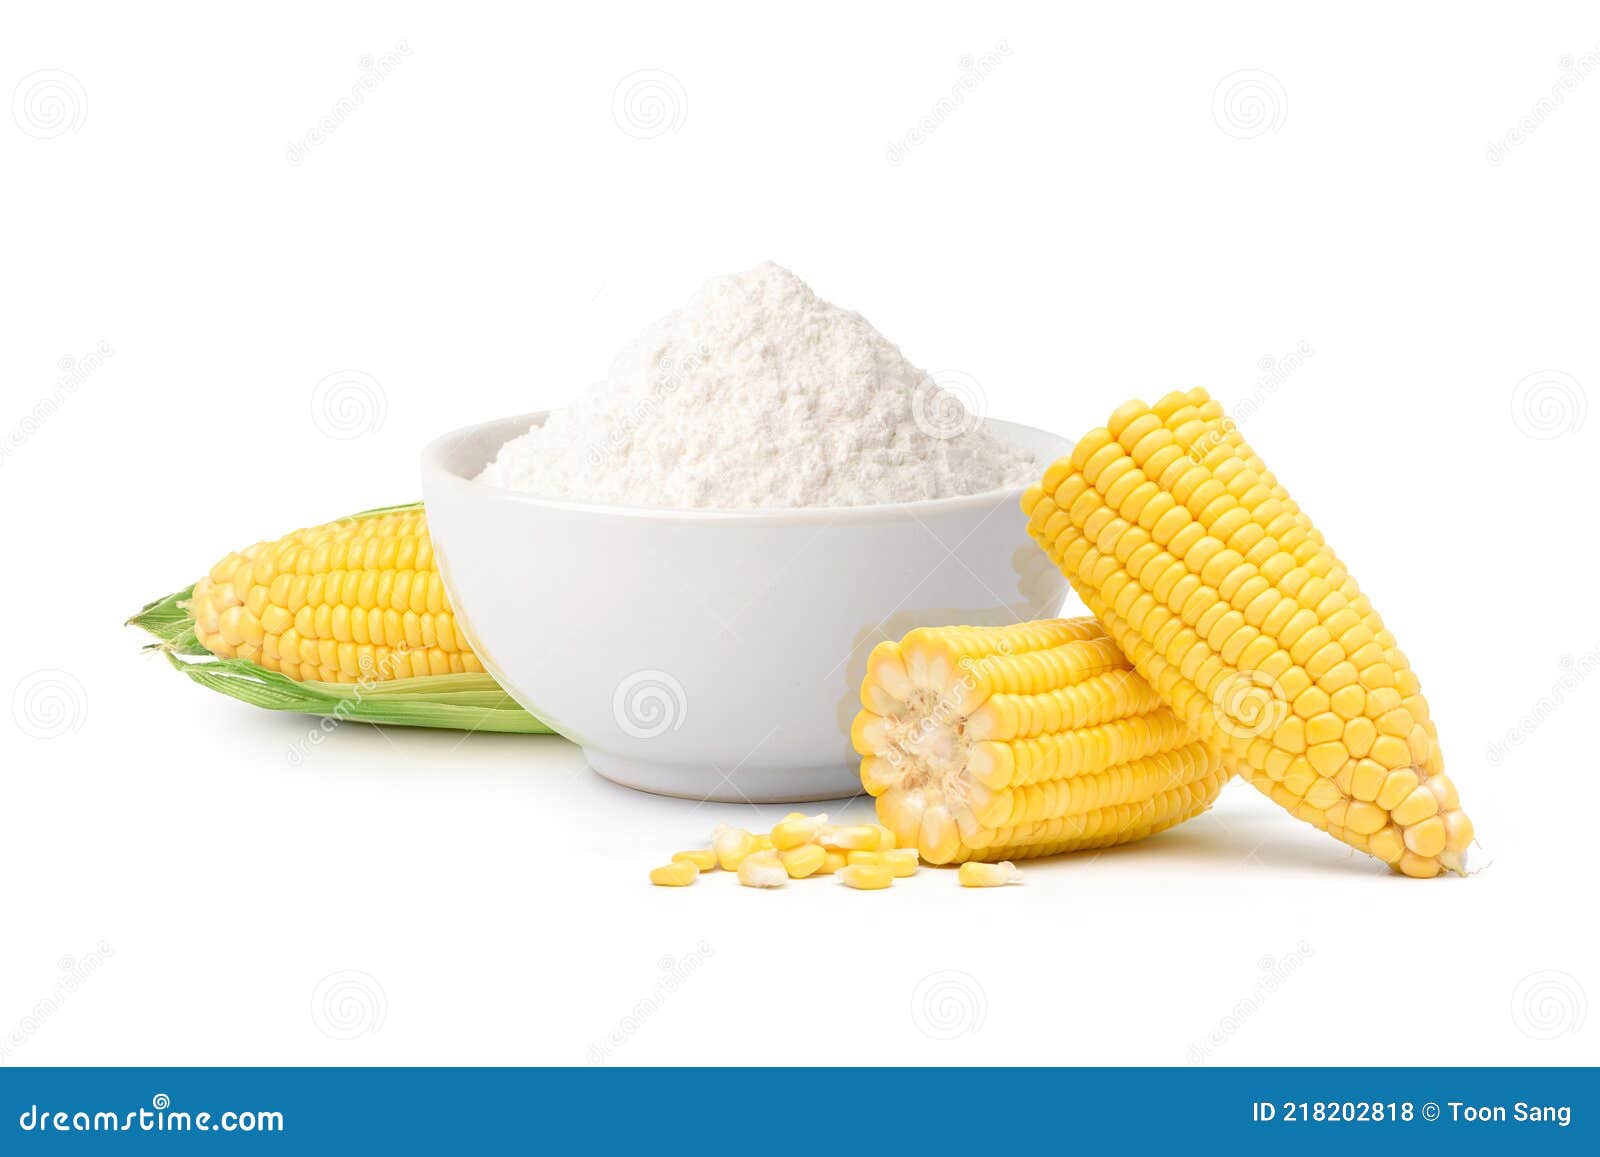 食用玉米淀粉简介 玉米淀粉的特性分析-食品加工包装在线